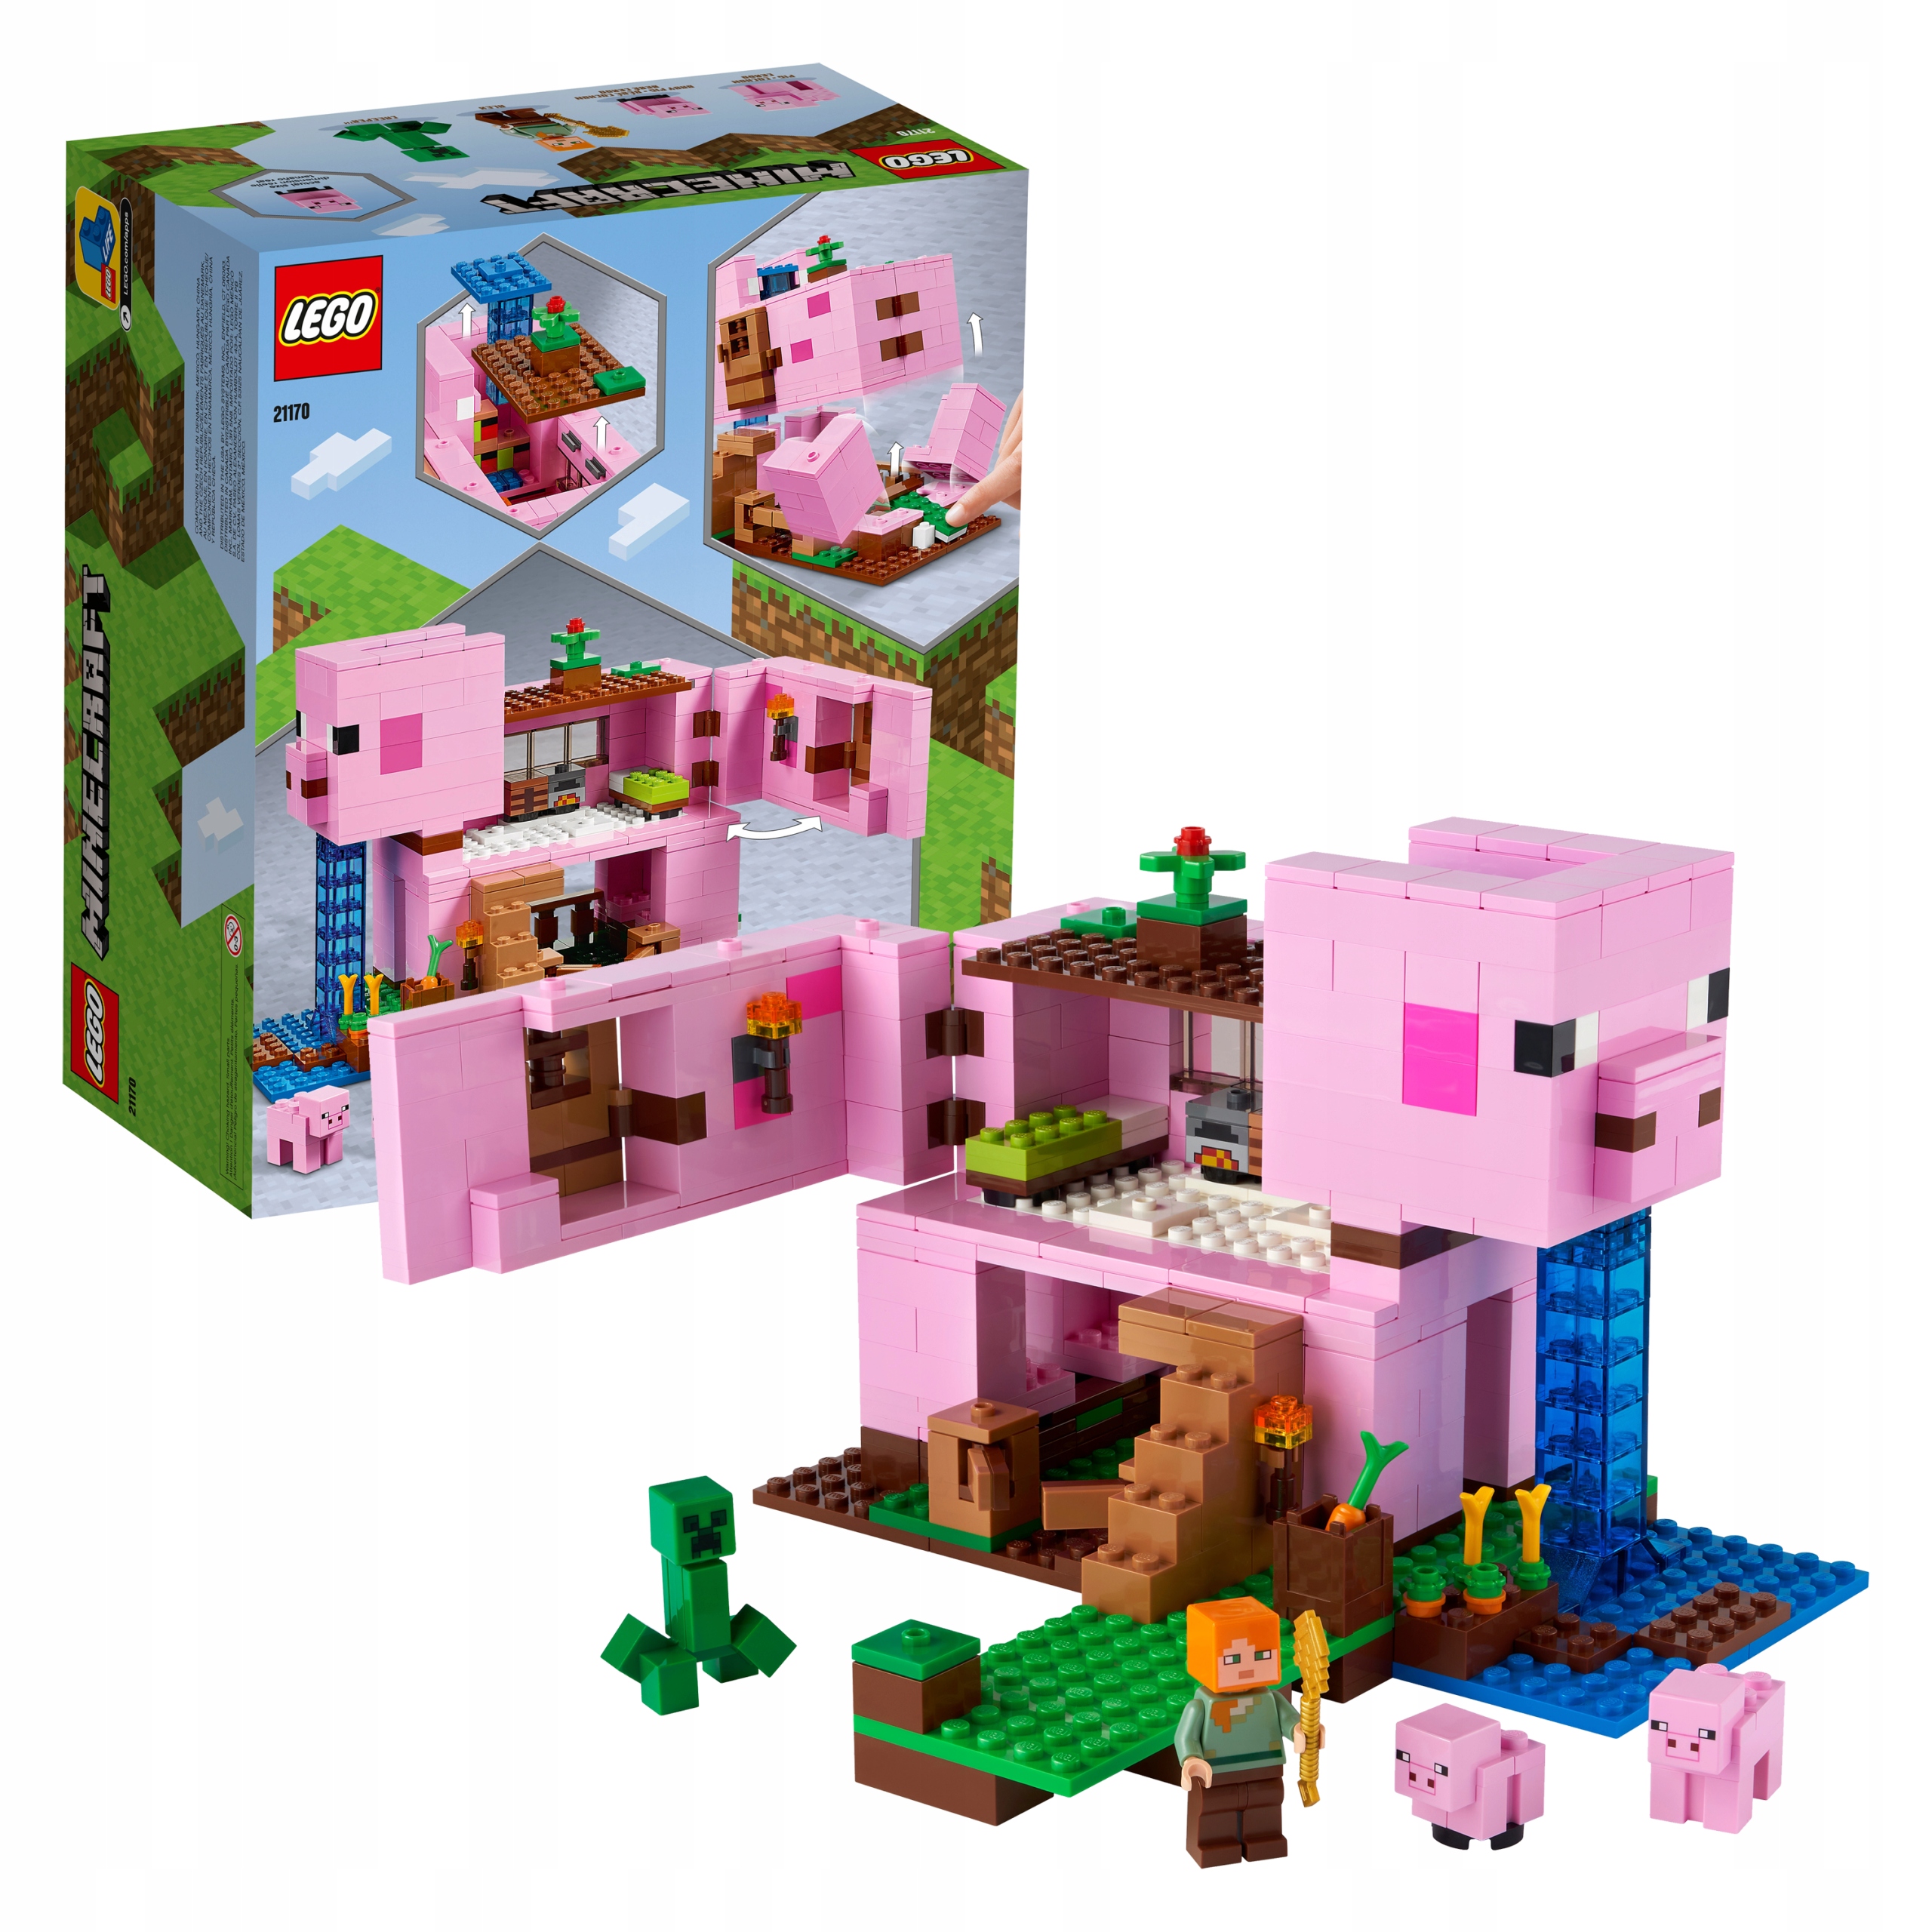 LEGO 21170 Minecraft - Dom w kształcie świni 13174322811 - Allegro.pl